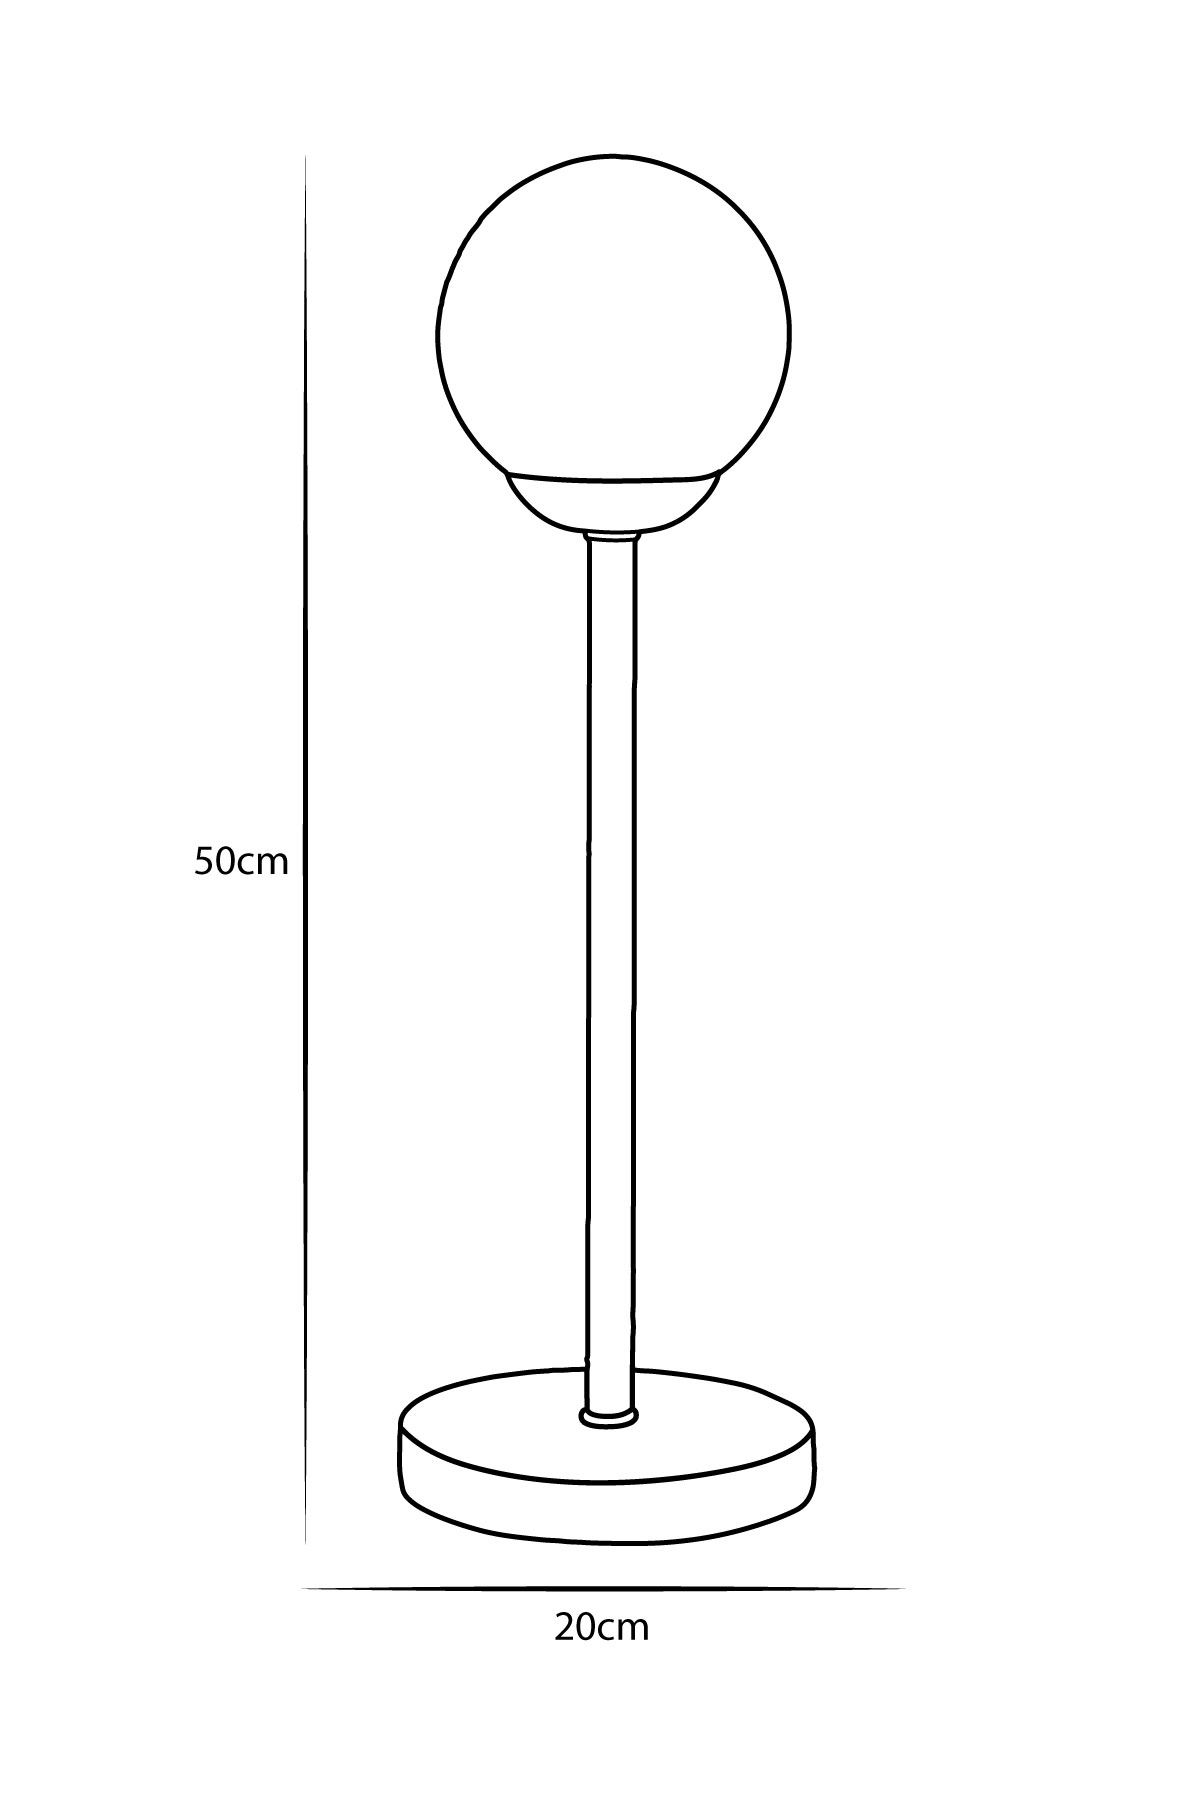 Glob Bakır Metal Gövde Beyaz Camlı Tasarım Lüx Masa Lambası